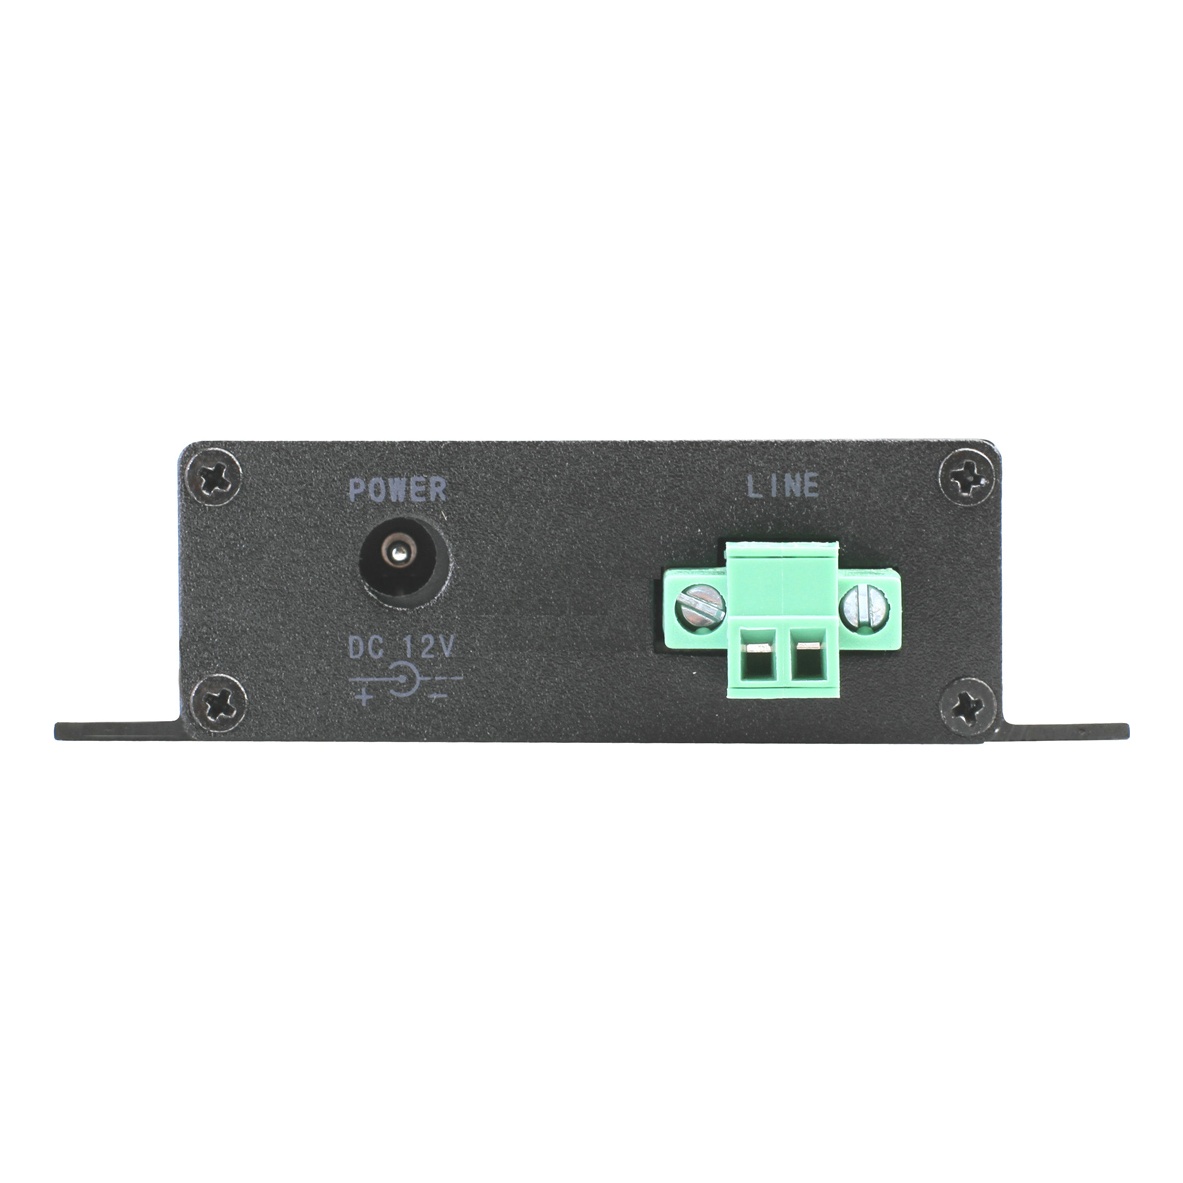 OSNOVO TR-IP/1 TR-IP/1 Дополнительный приемопередатчик (VDSL) к комплекту -KIT используется для передачи Ethernet до 1000м по коаксиальному кабелю RG59 (RG6), телефонному , UTP кабелю